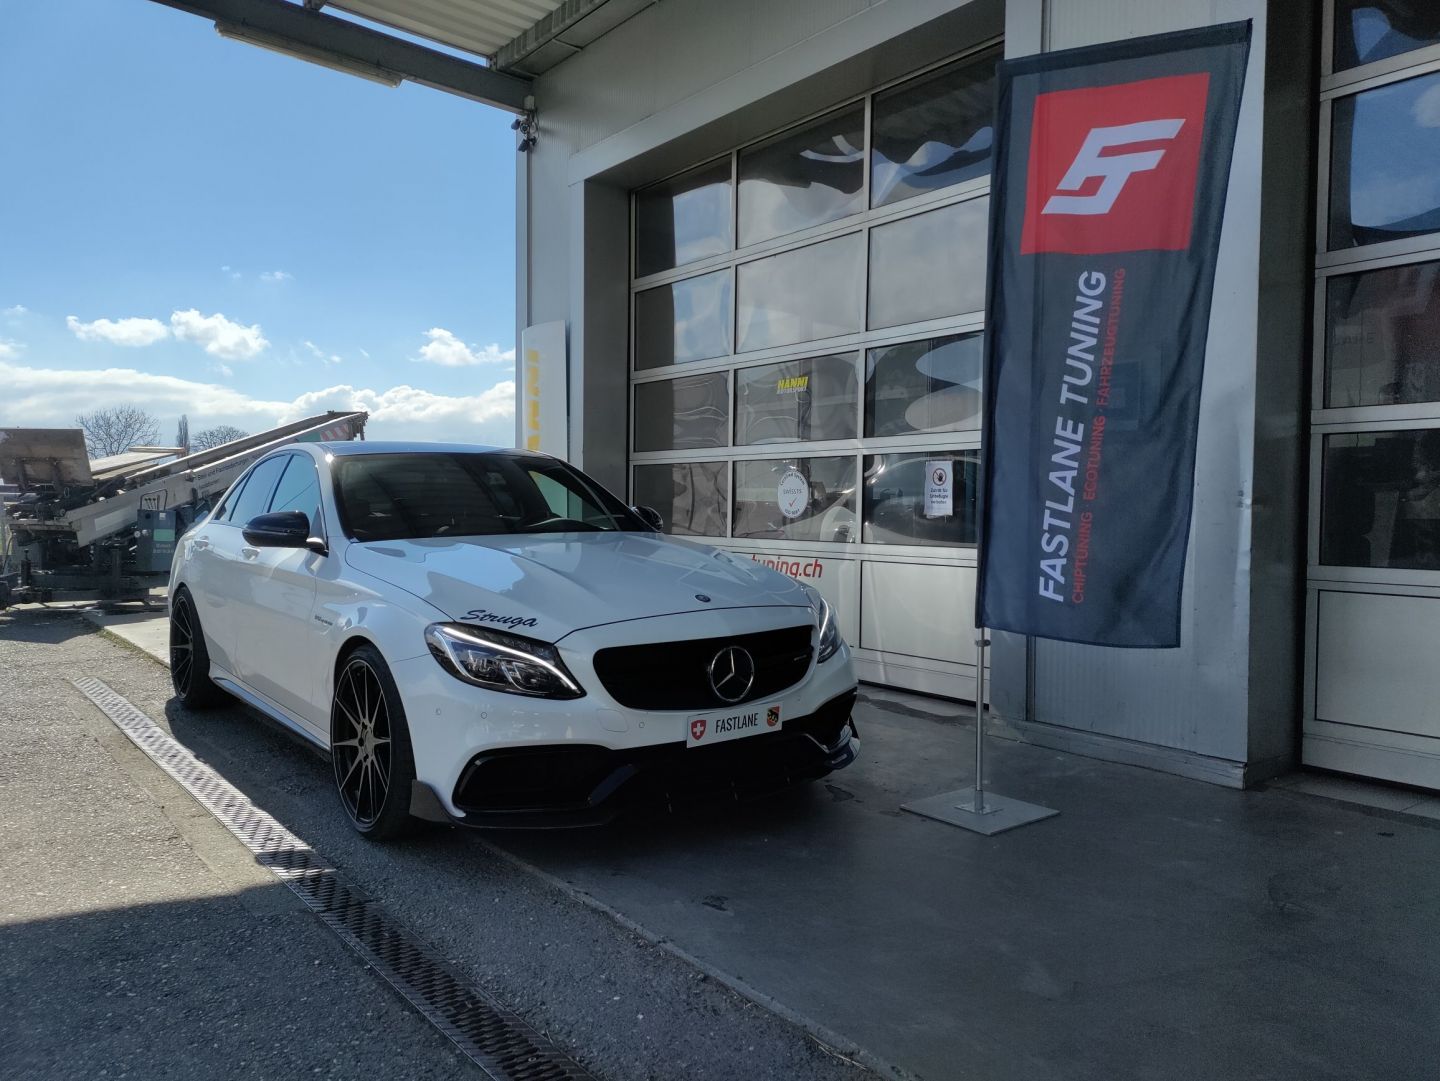 Ein weisser Mercedes Benz C63 AMG steht vor der Garage neben der Fastlane Tuning Schweiz Flagge